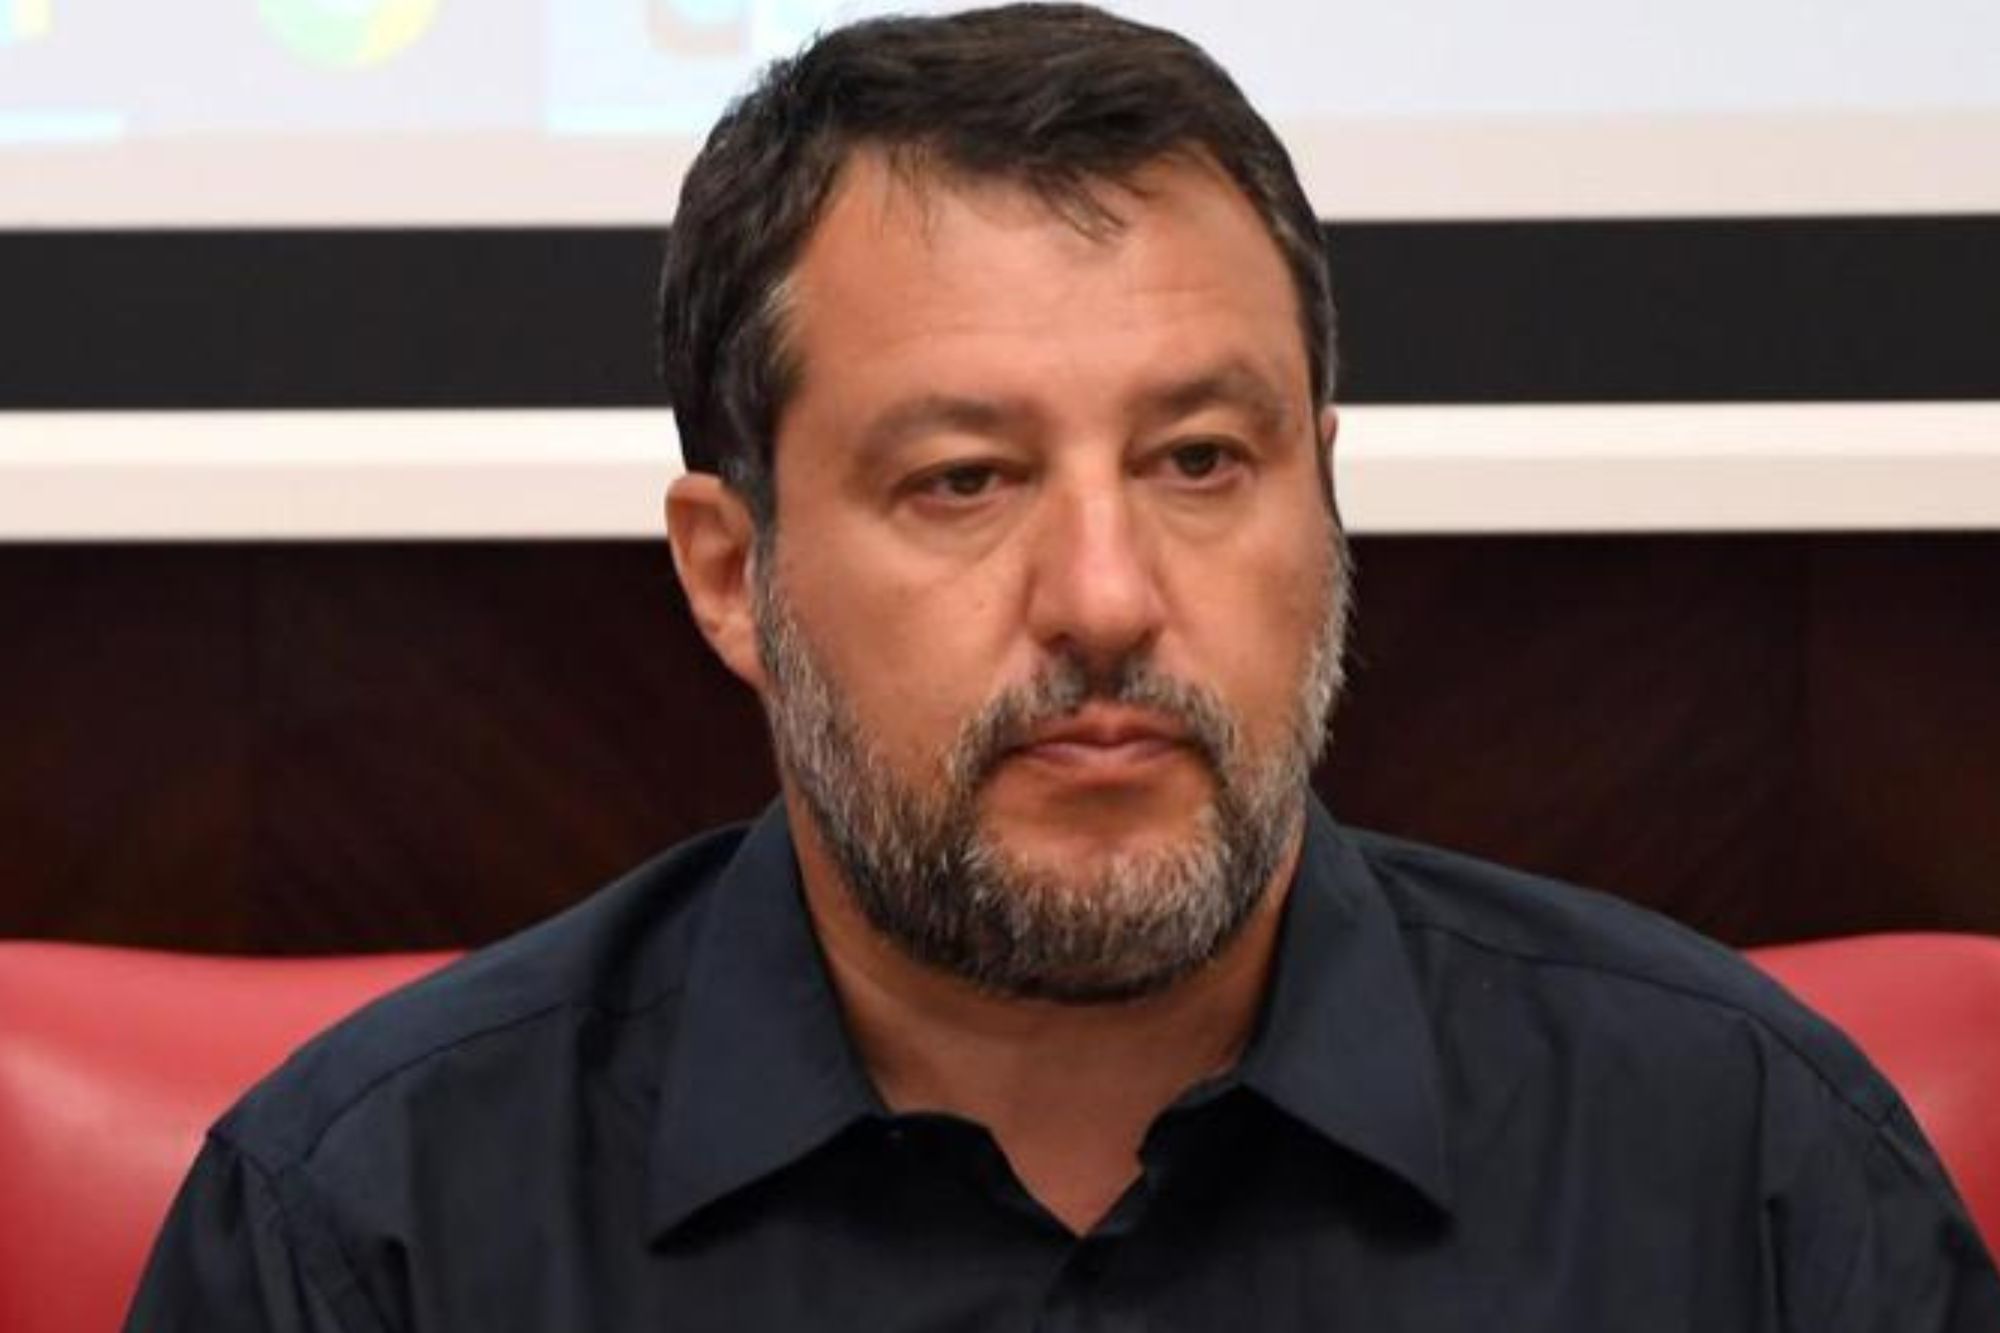 ‘Meno Europa e più Italia, sì a mamme e papà’. Salvini provoca con l’immagine di un ‘uomo incinto’